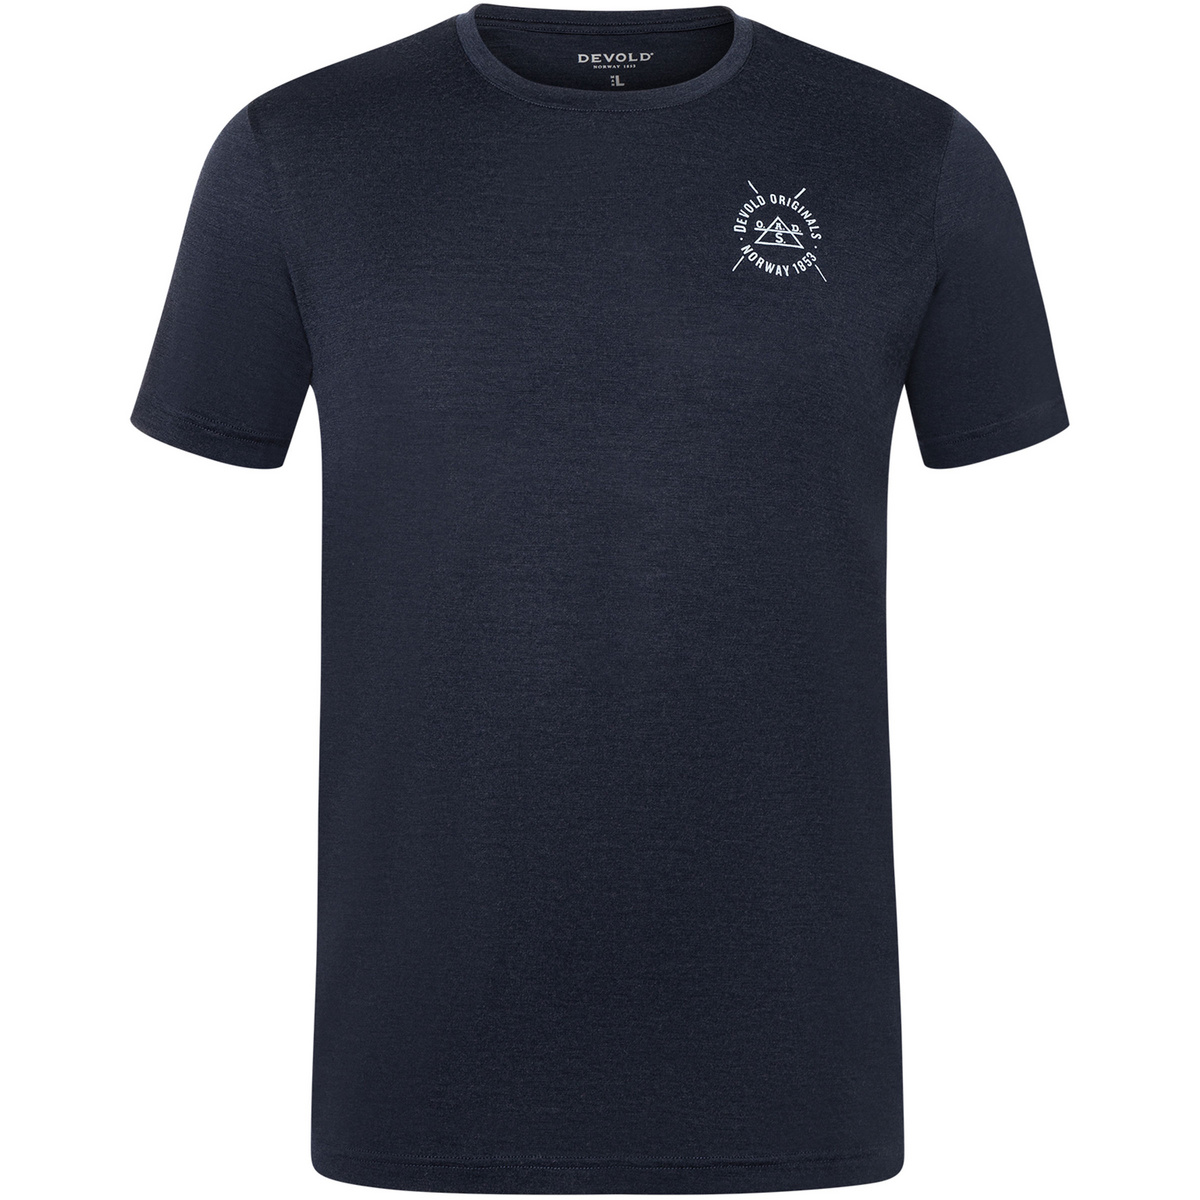 Devold Herren Nordfjord Merino 150 T-Shirt von Devold